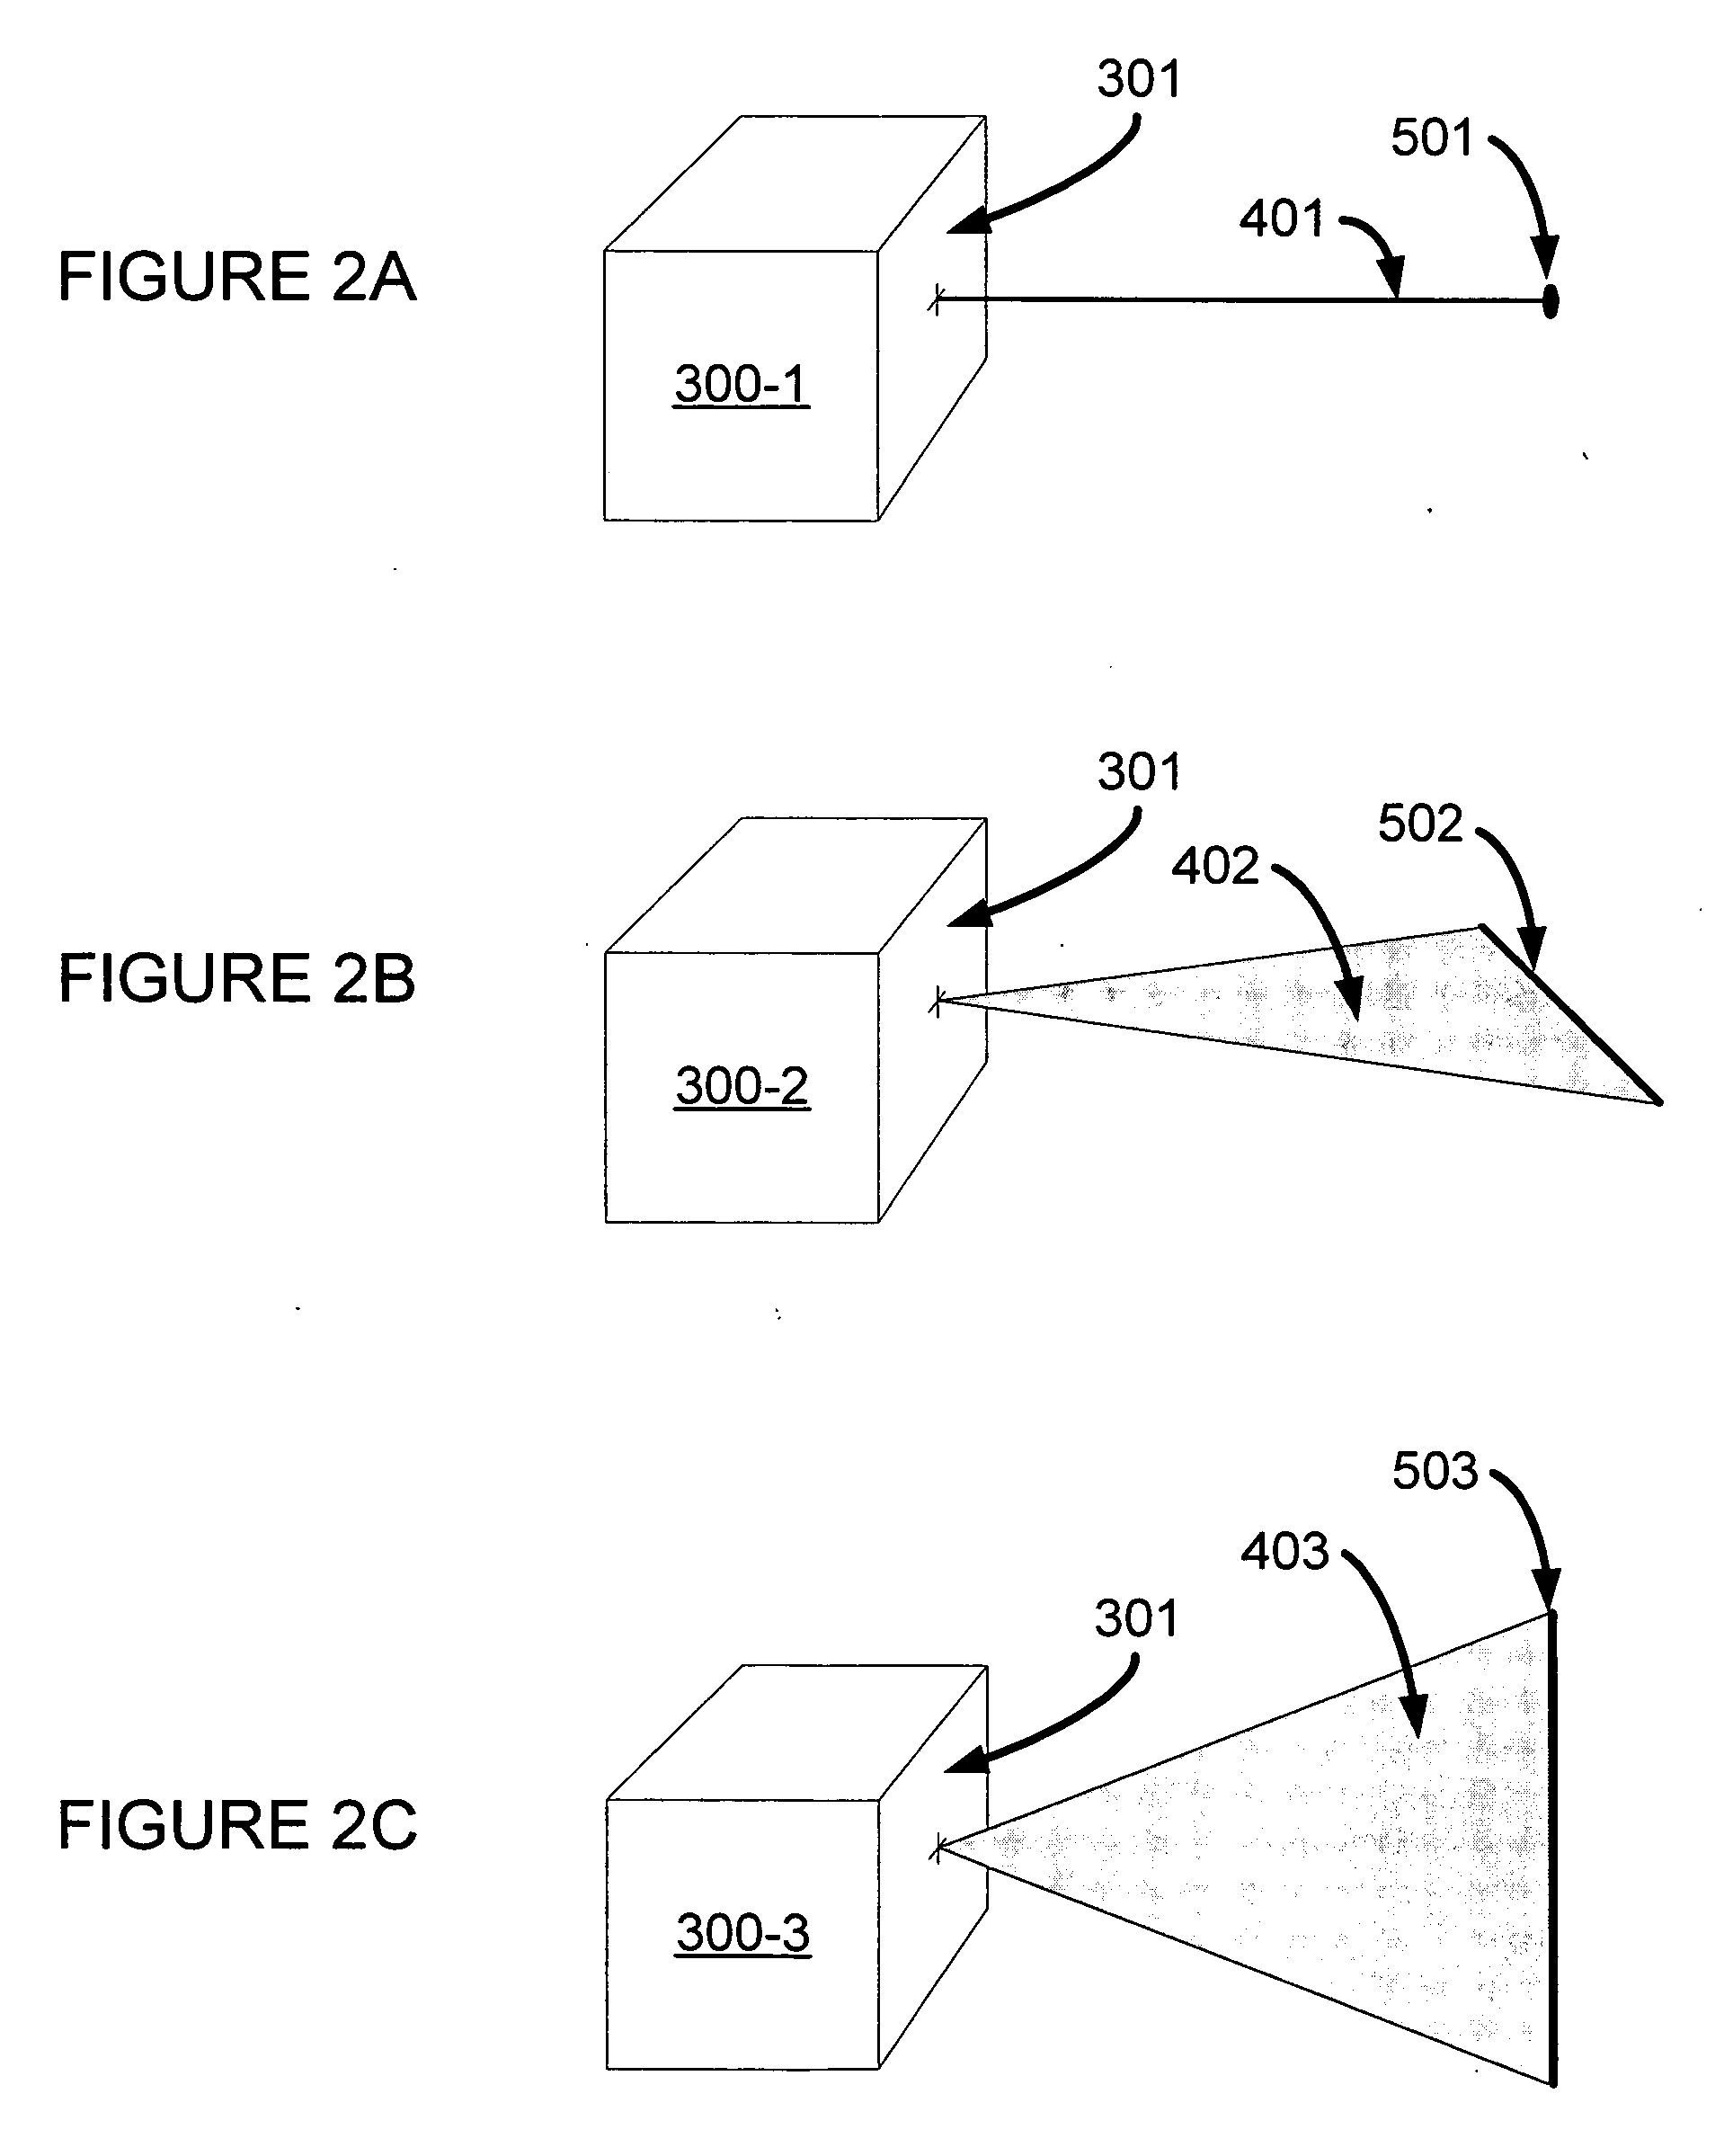 Modular laser layout system